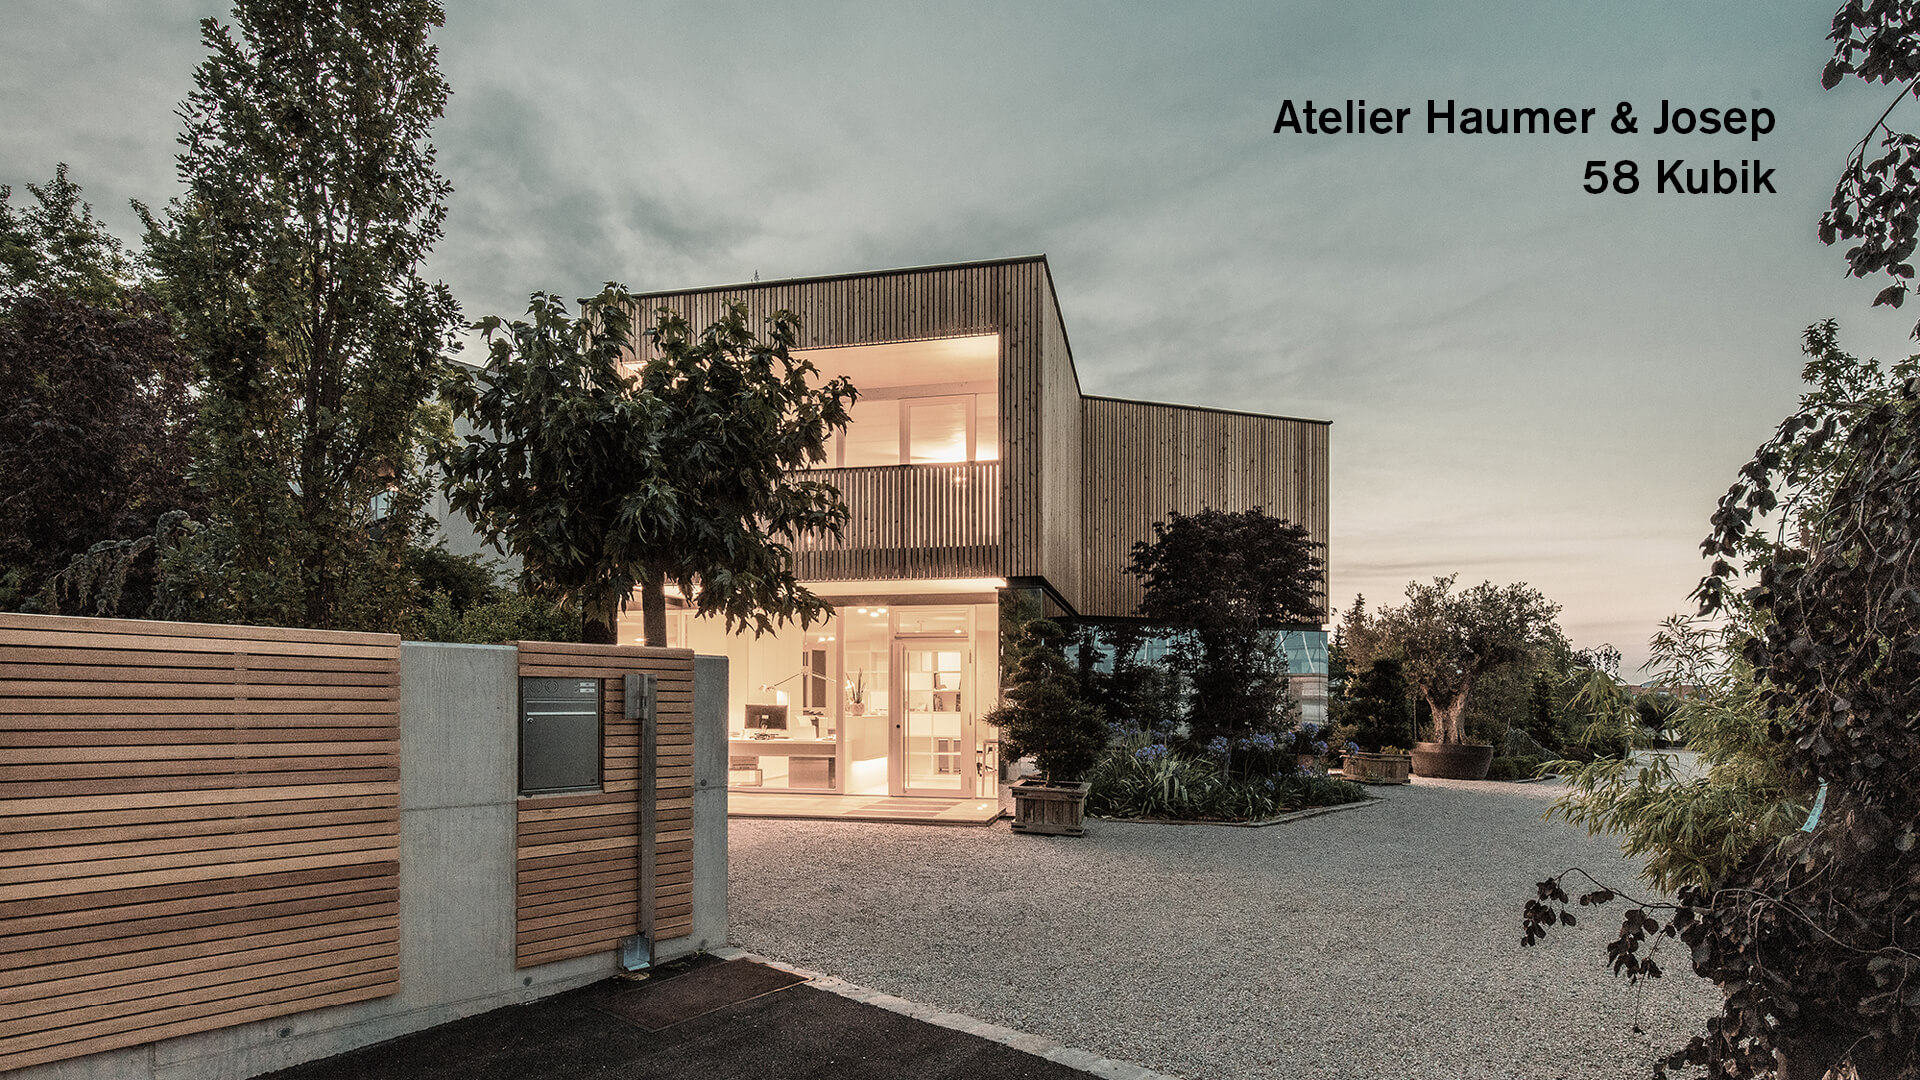 Atelier Haumer & Josep